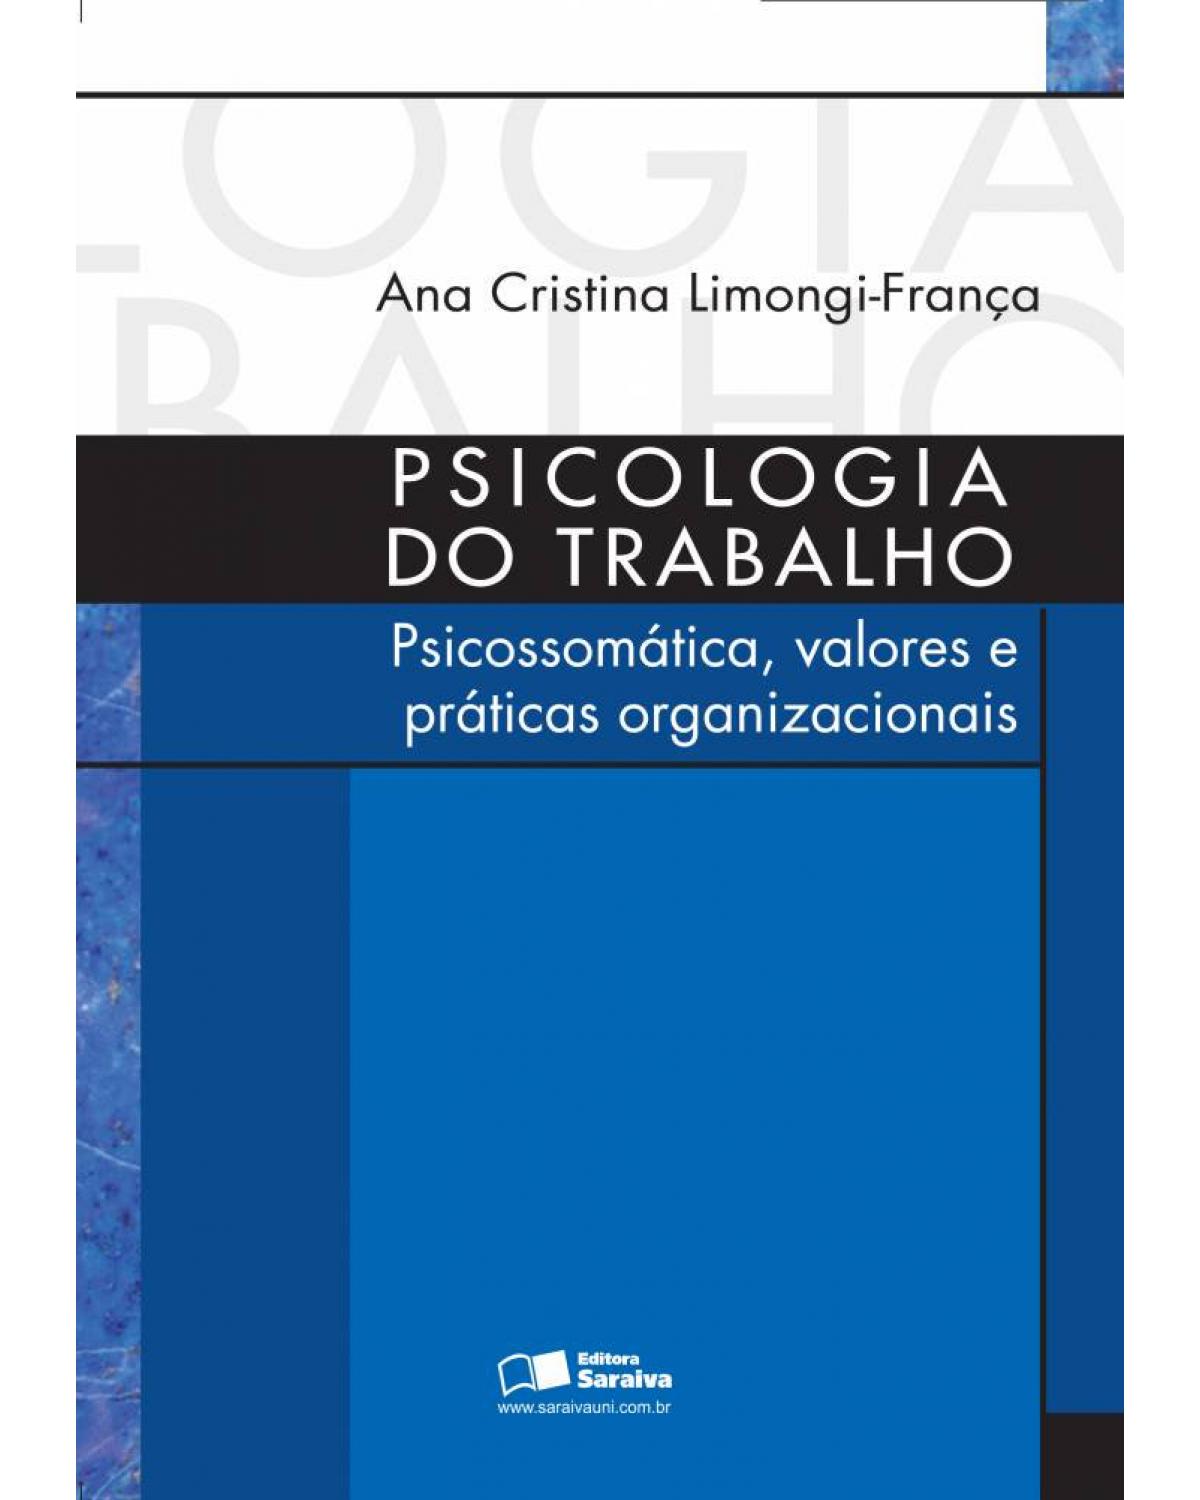 Psicologia do trabalho - psicossomática, valores e práticas organizacionais - 1ª Edição | 2010